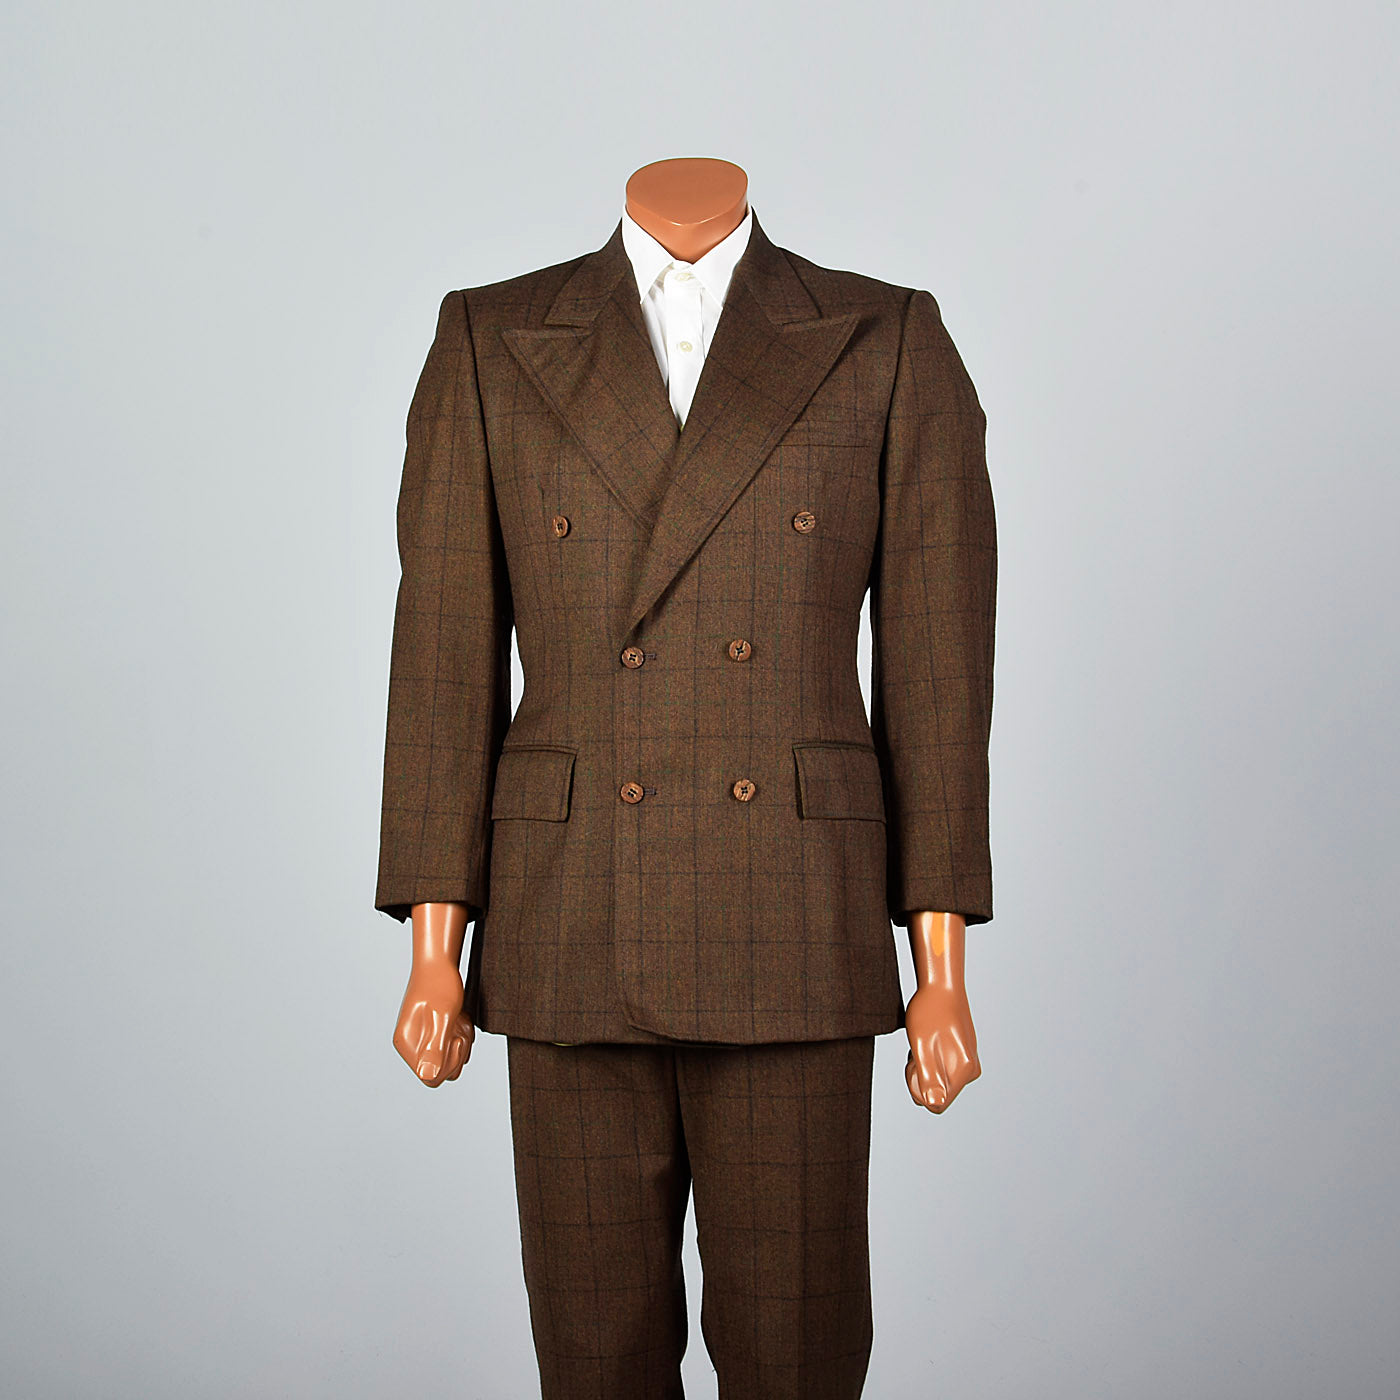 ASOS DESIGN 70s lapel suit in aubergine | ASOS